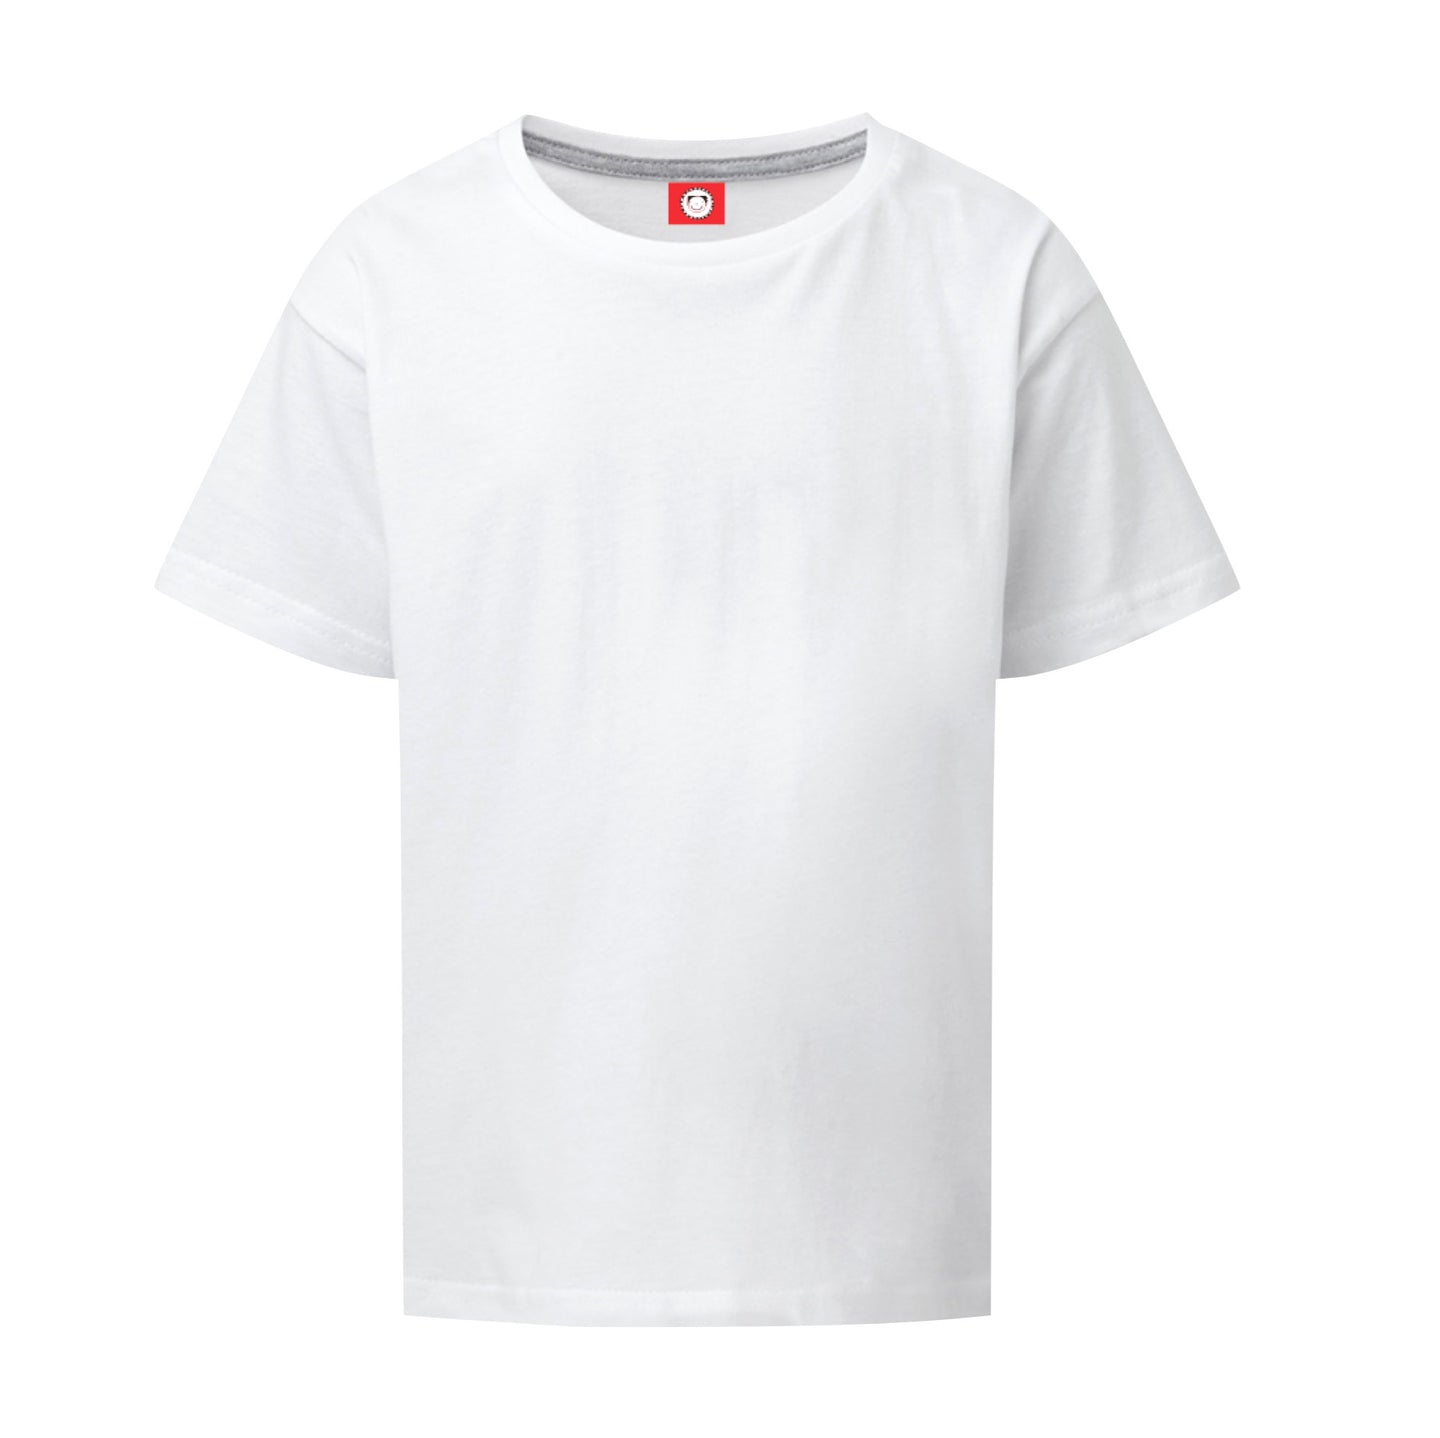 Tom Gates White T-shirt for doodling heaven!